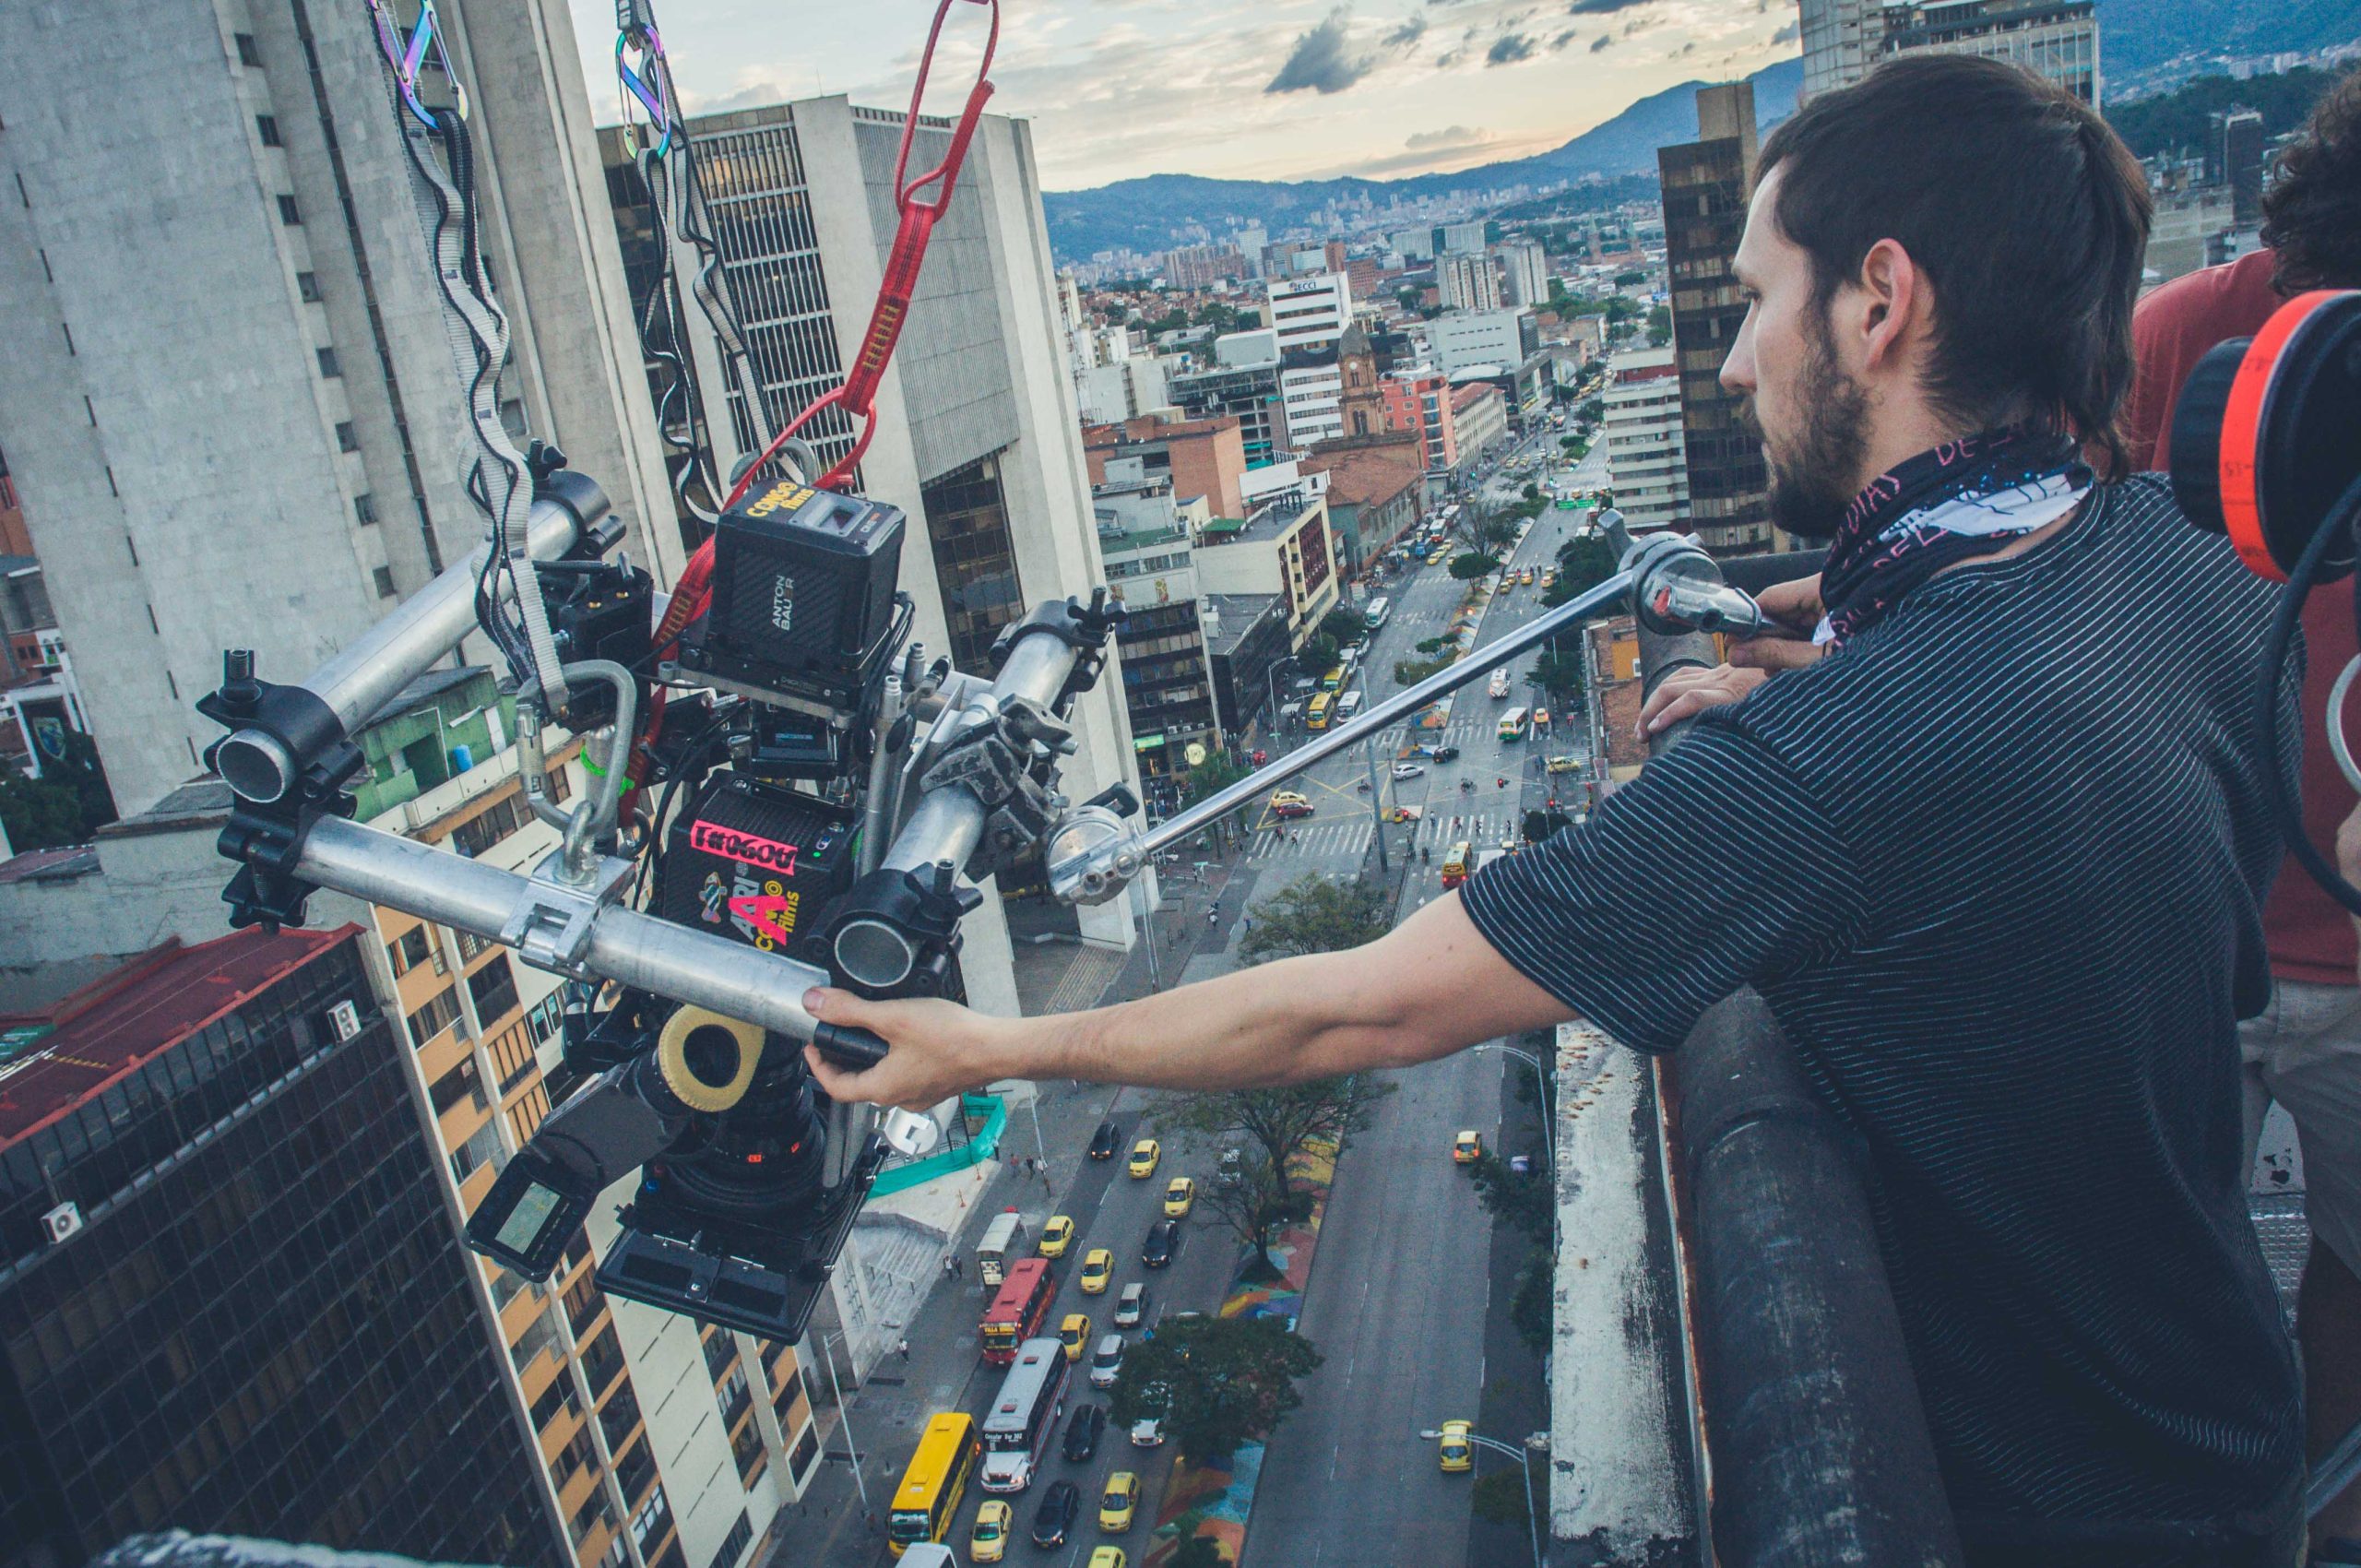 Empieza rodaje de mega producción cinematográfica en Medellín